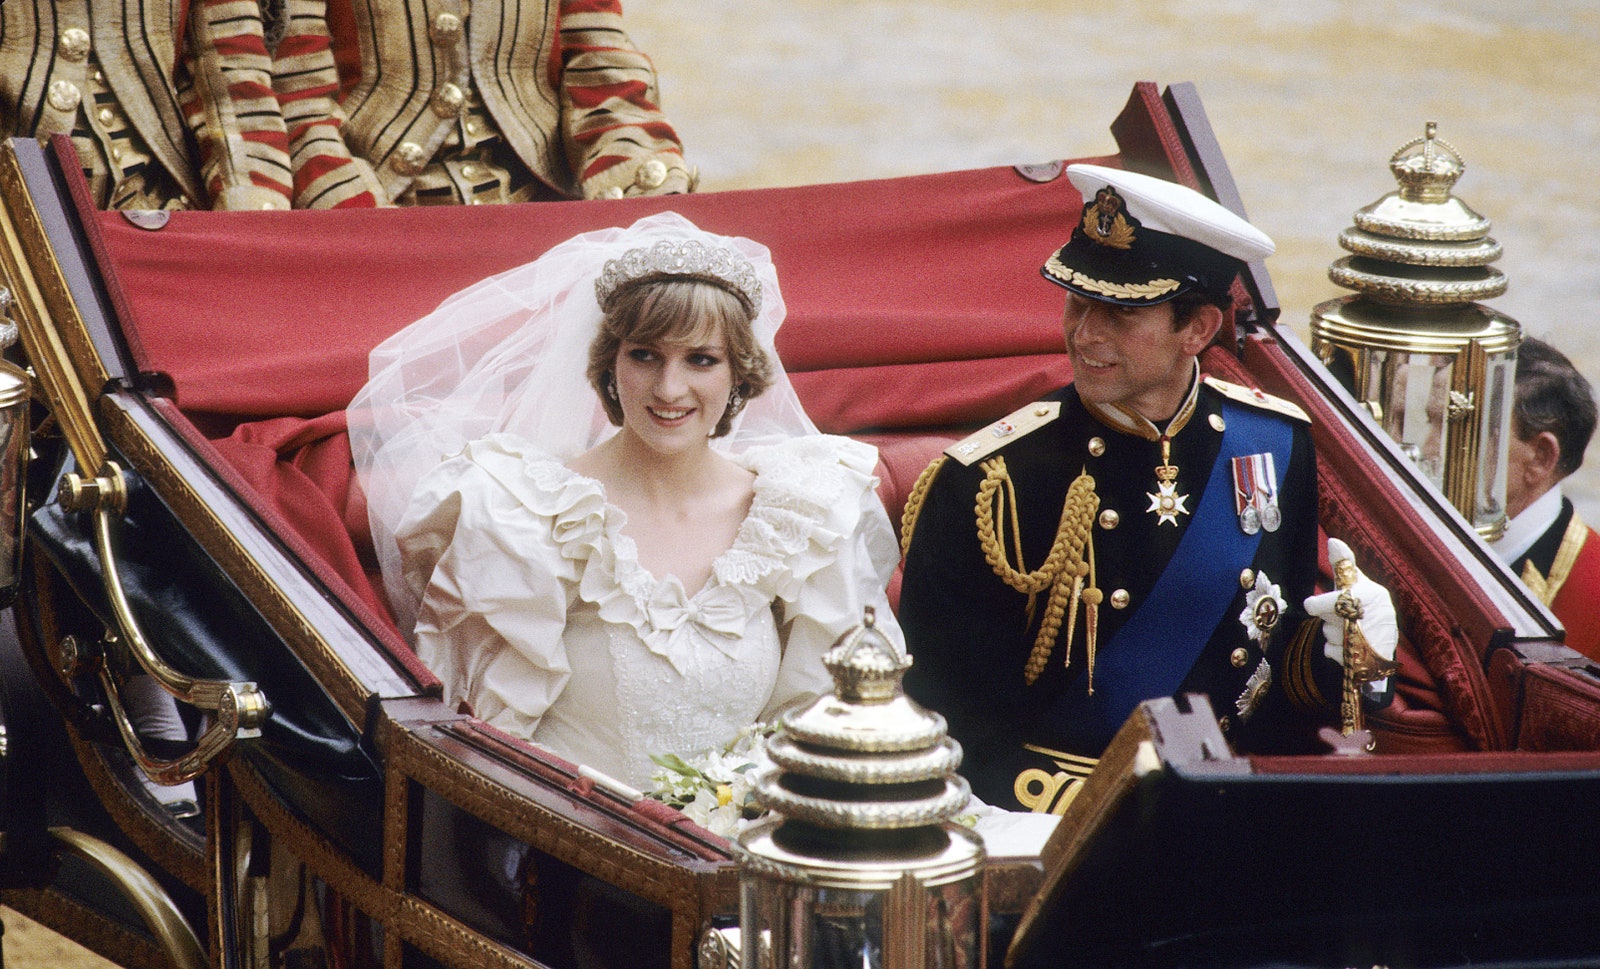 Свадьба принца Чарльза и принцессы Дианы